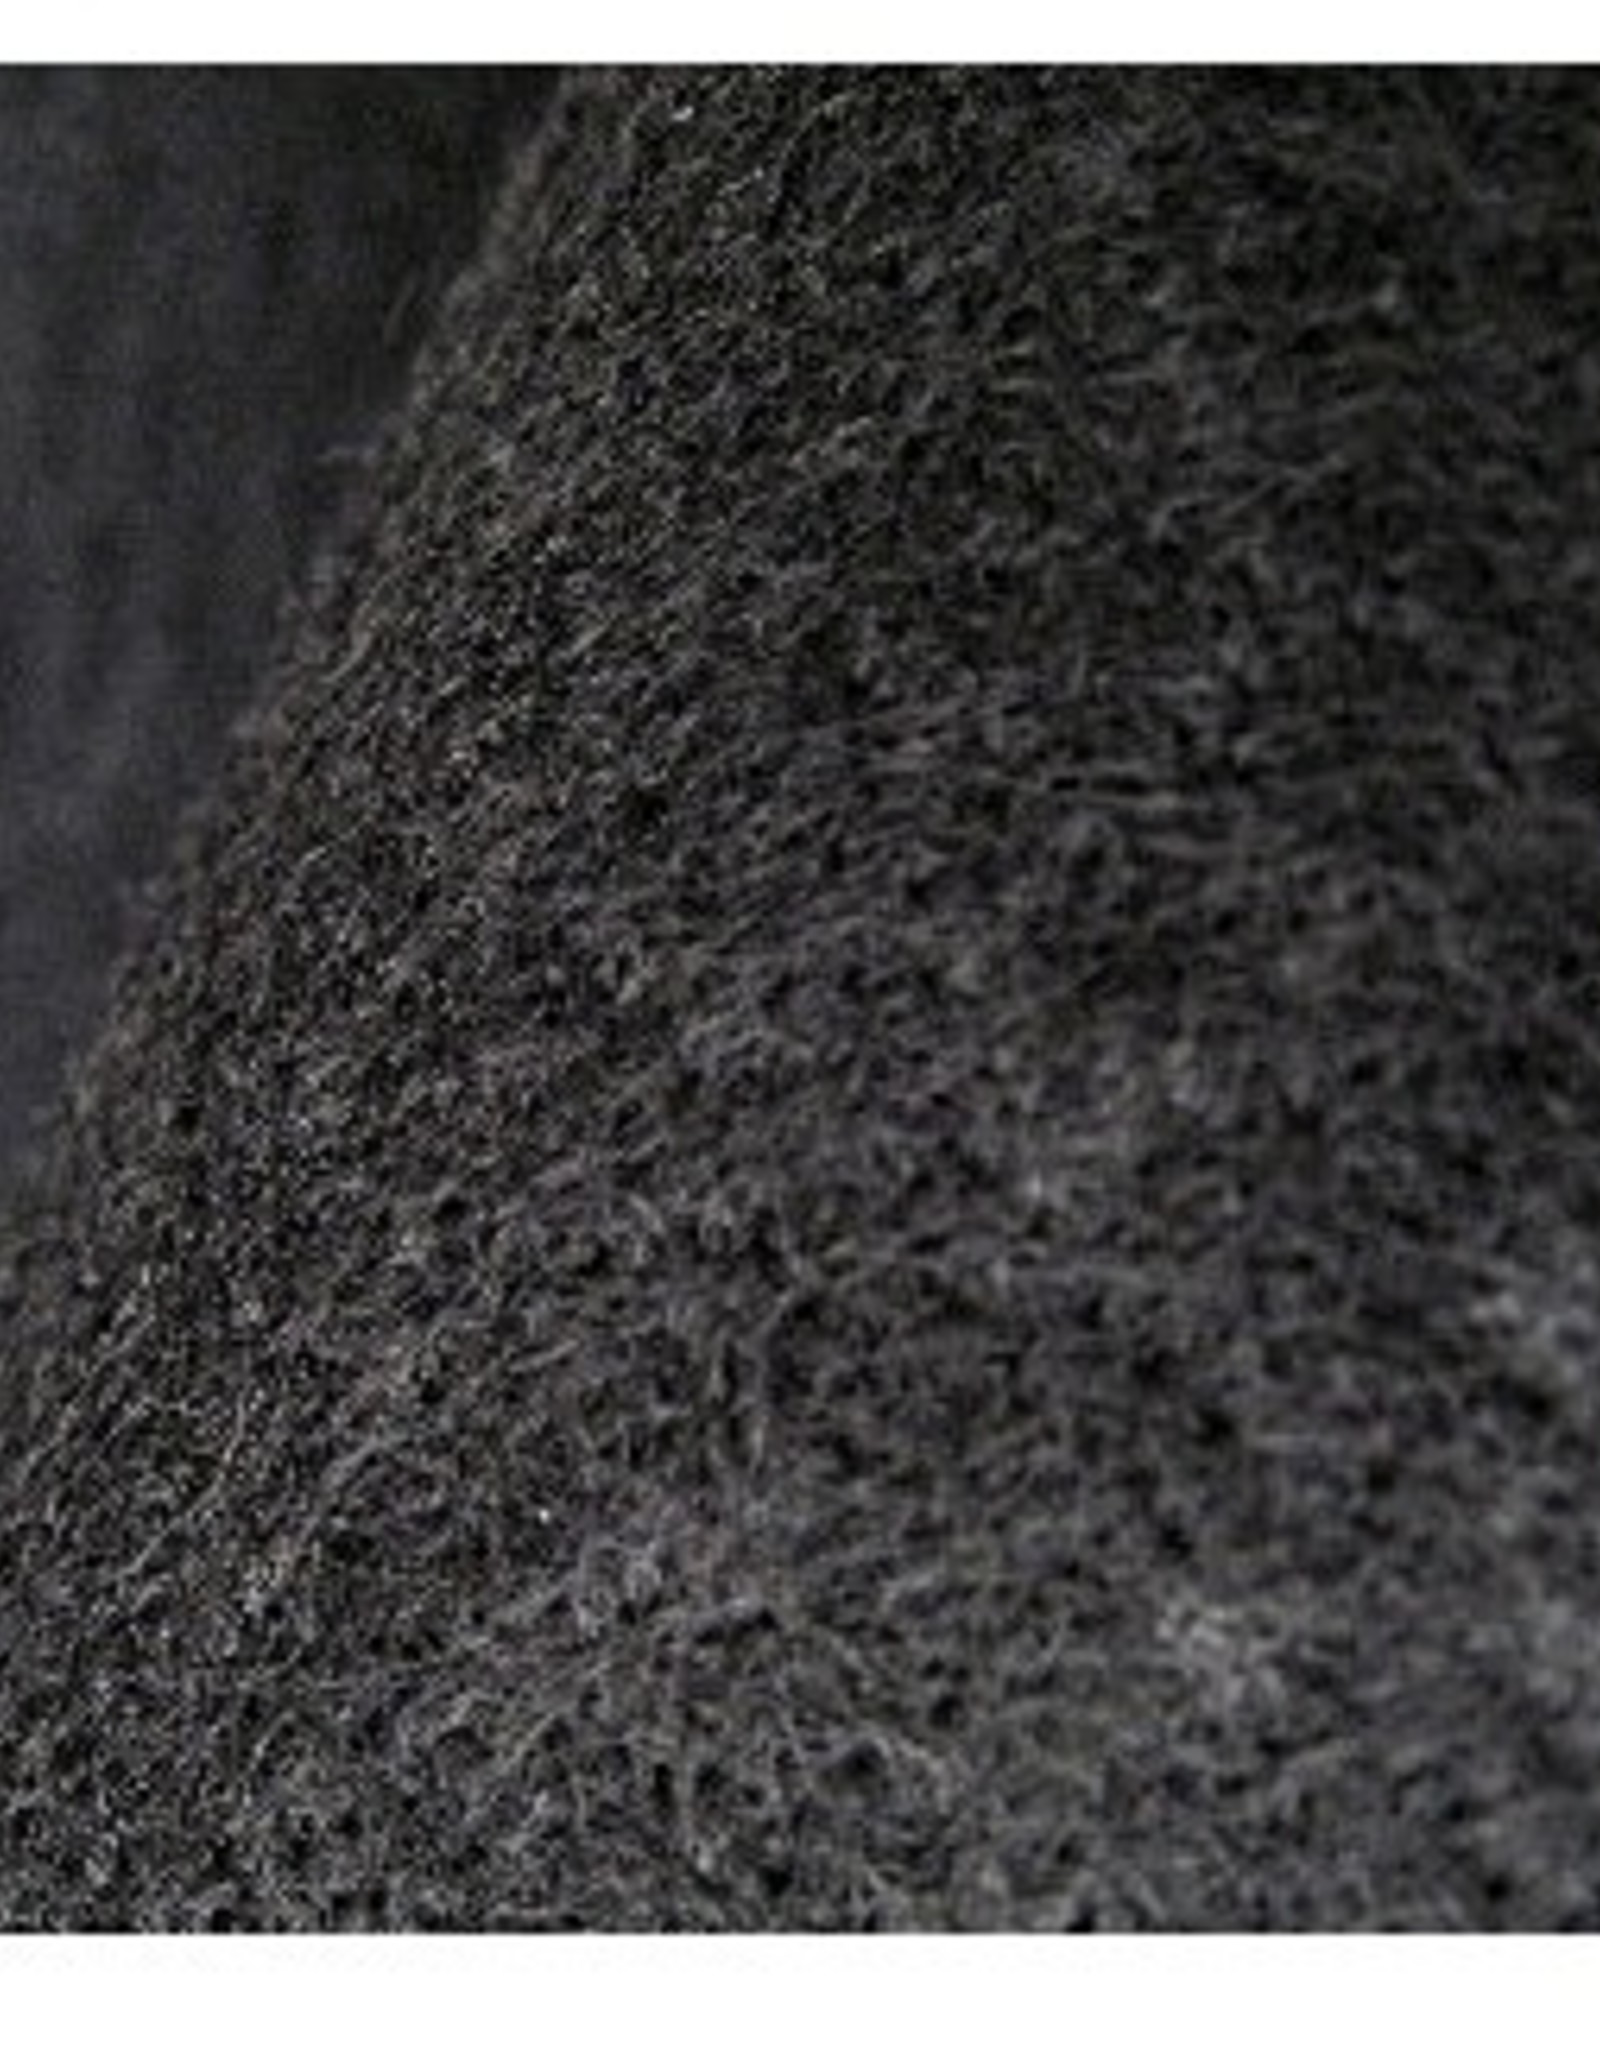 DALCO Non-Woven Geotextile Fabric 1160N, 16 oz. 15' x 300'